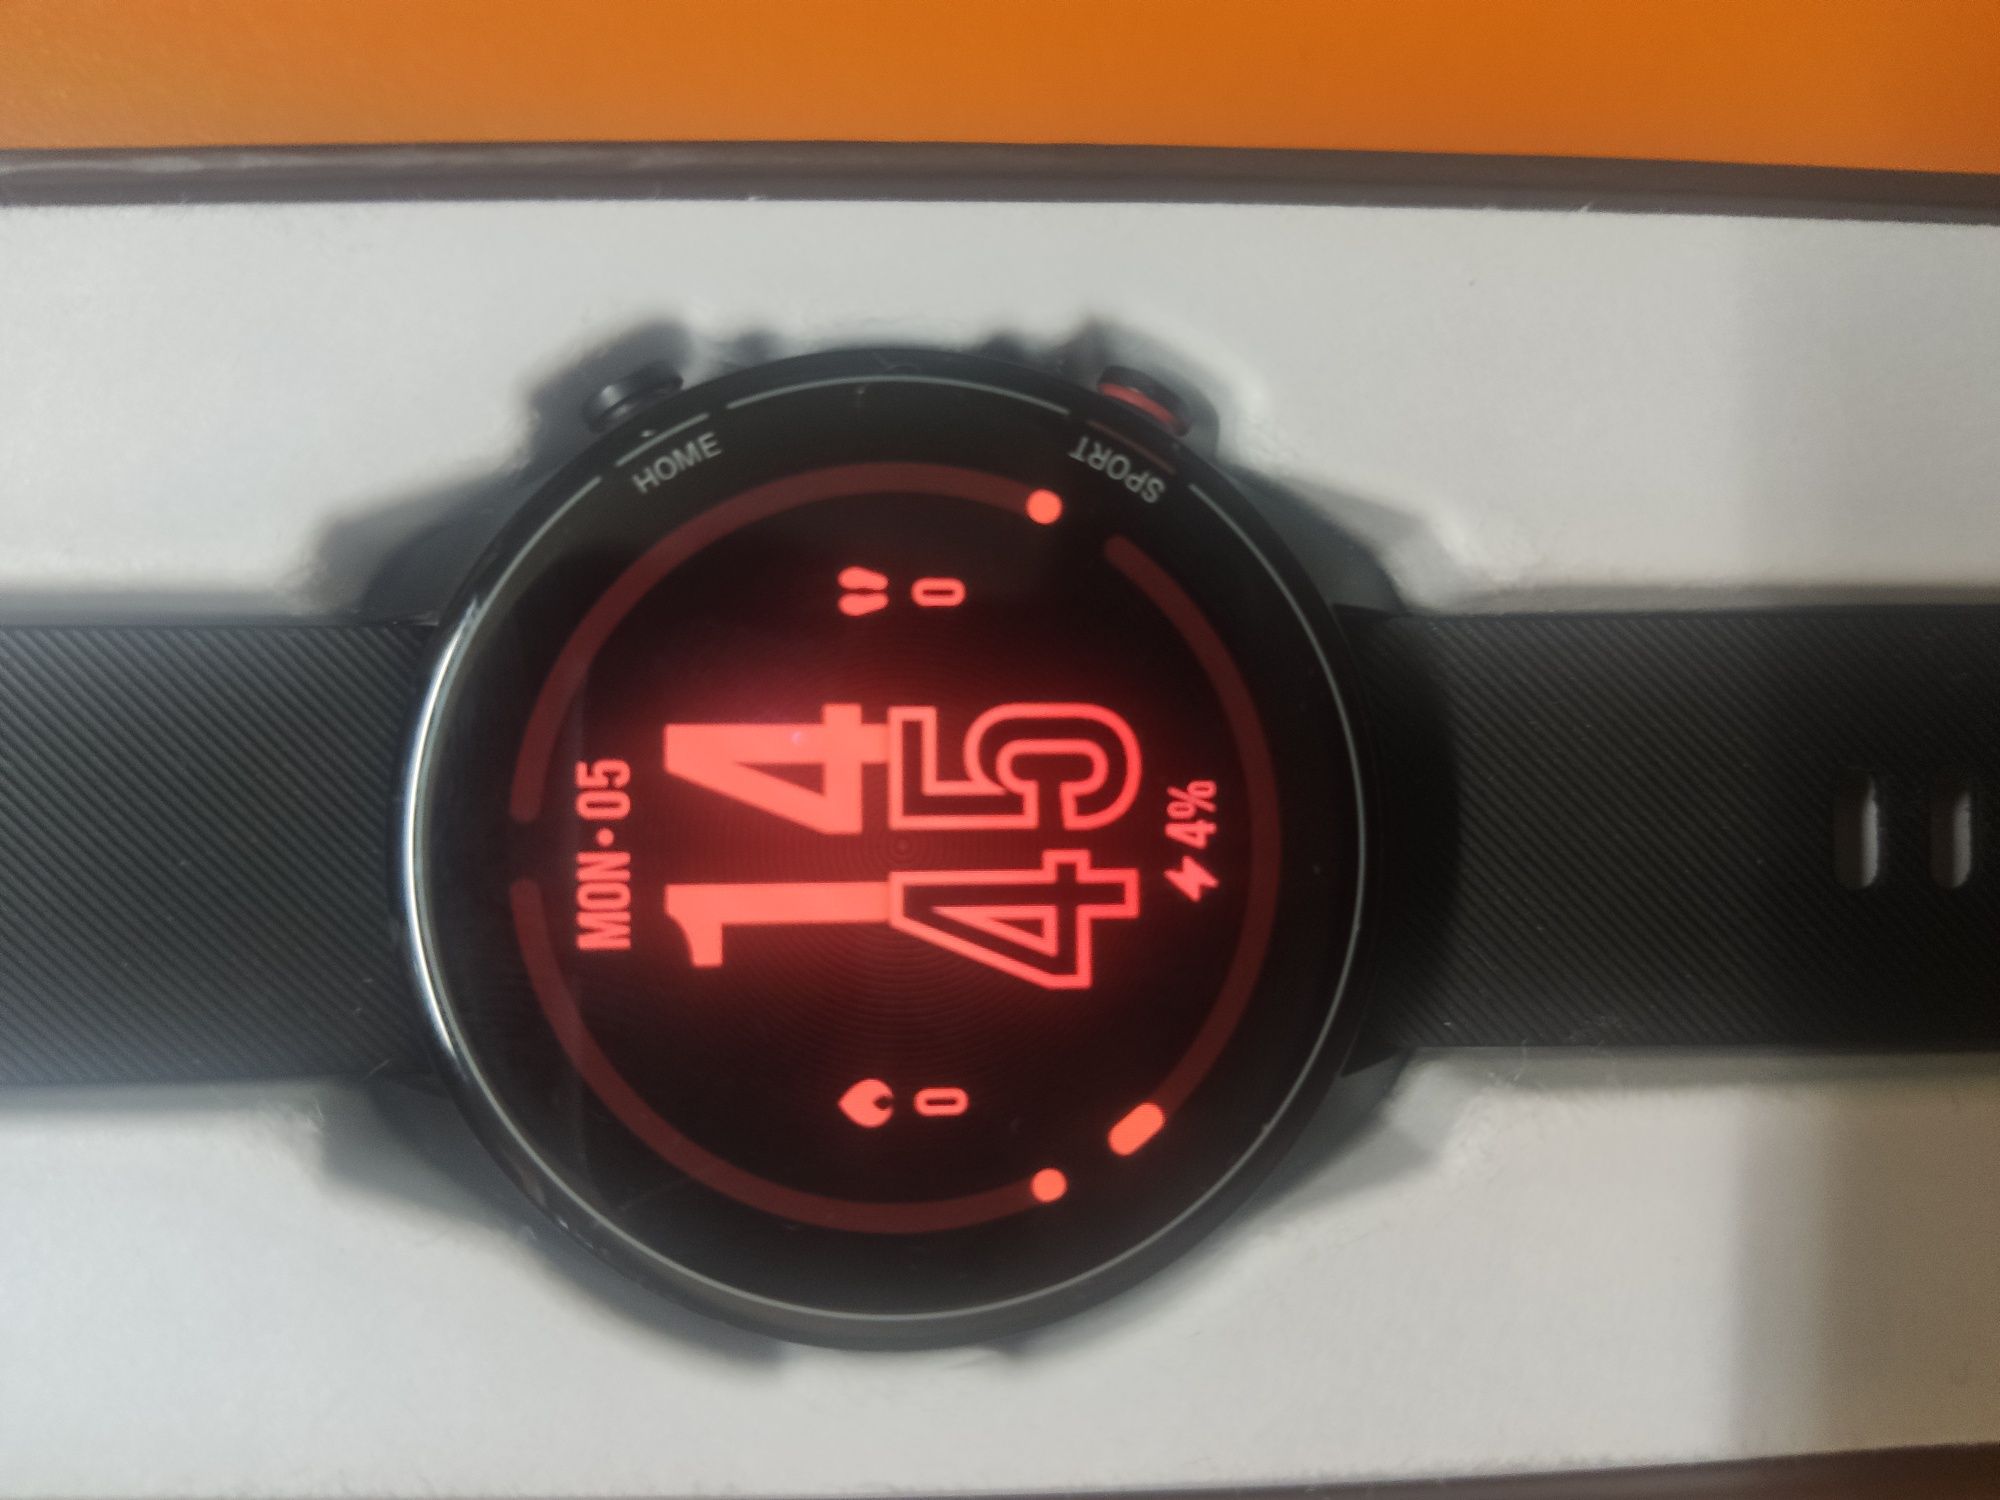 Xiaomi mi watch.